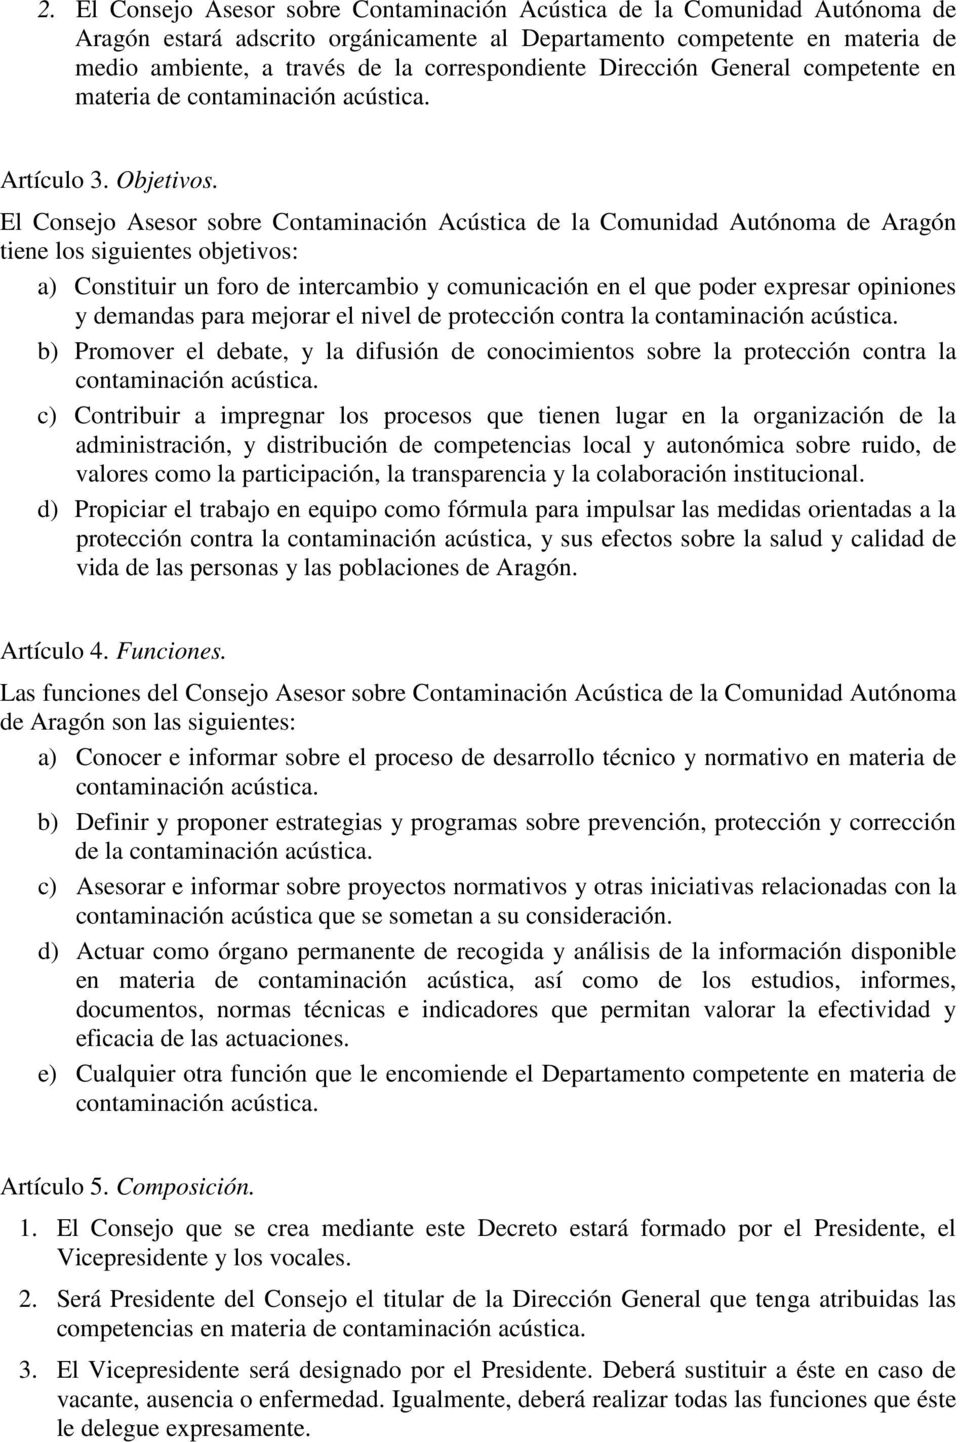 El Consejo Asesor sobre Contaminación Acústica de la Comunidad Autónoma de Aragón tiene los siguientes objetivos: a) Constituir un foro de intercambio y comunicación en el que poder expresar